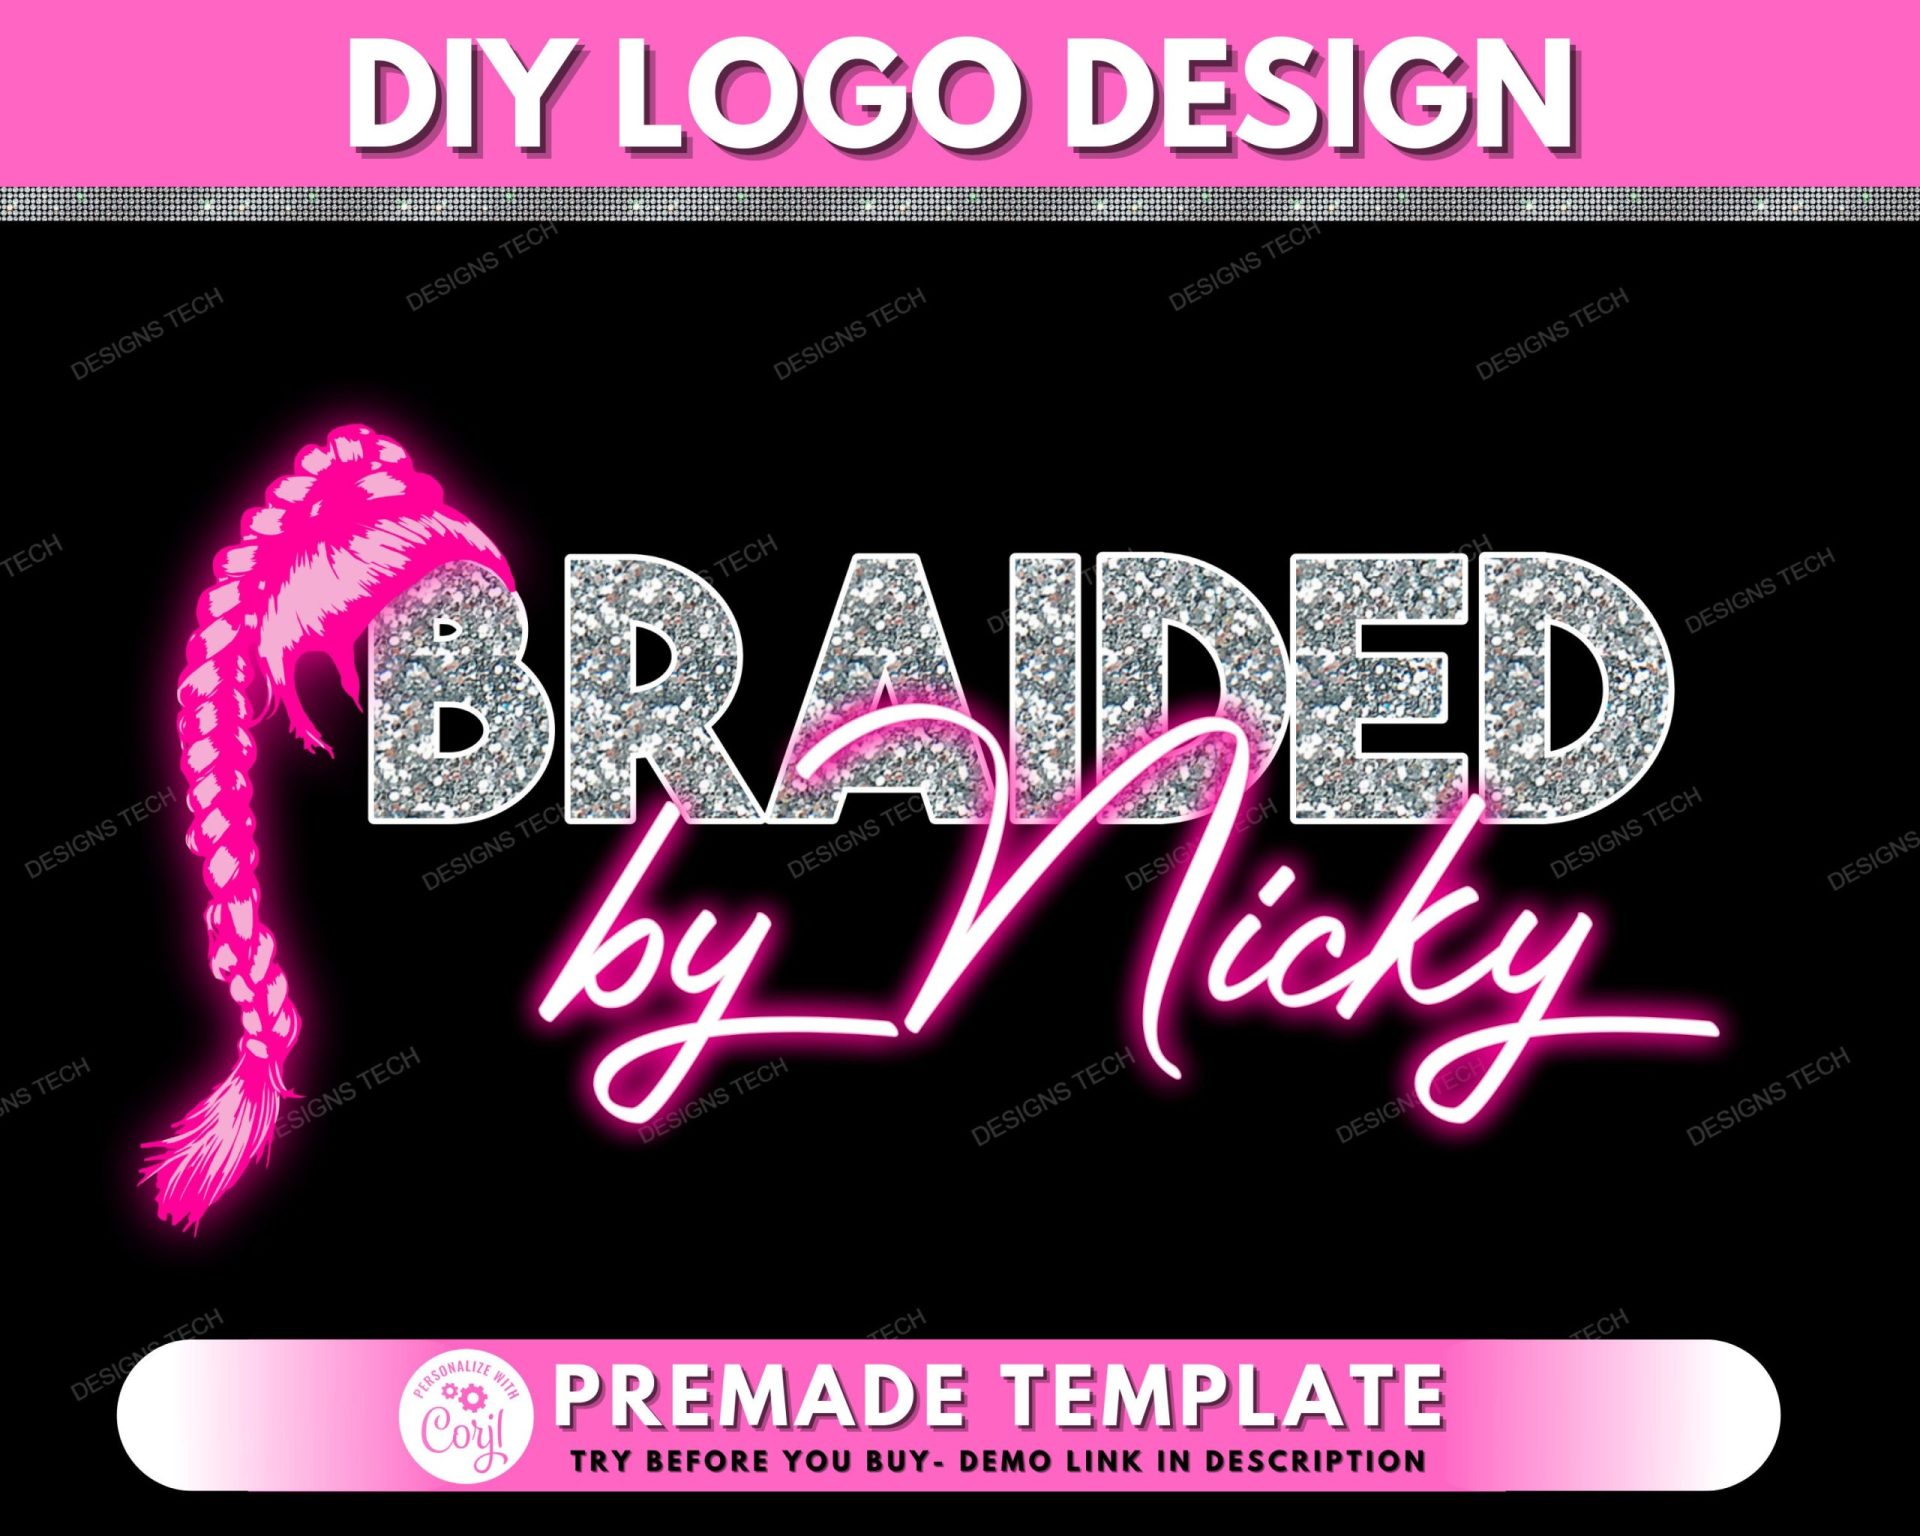 braider logo ideas 1